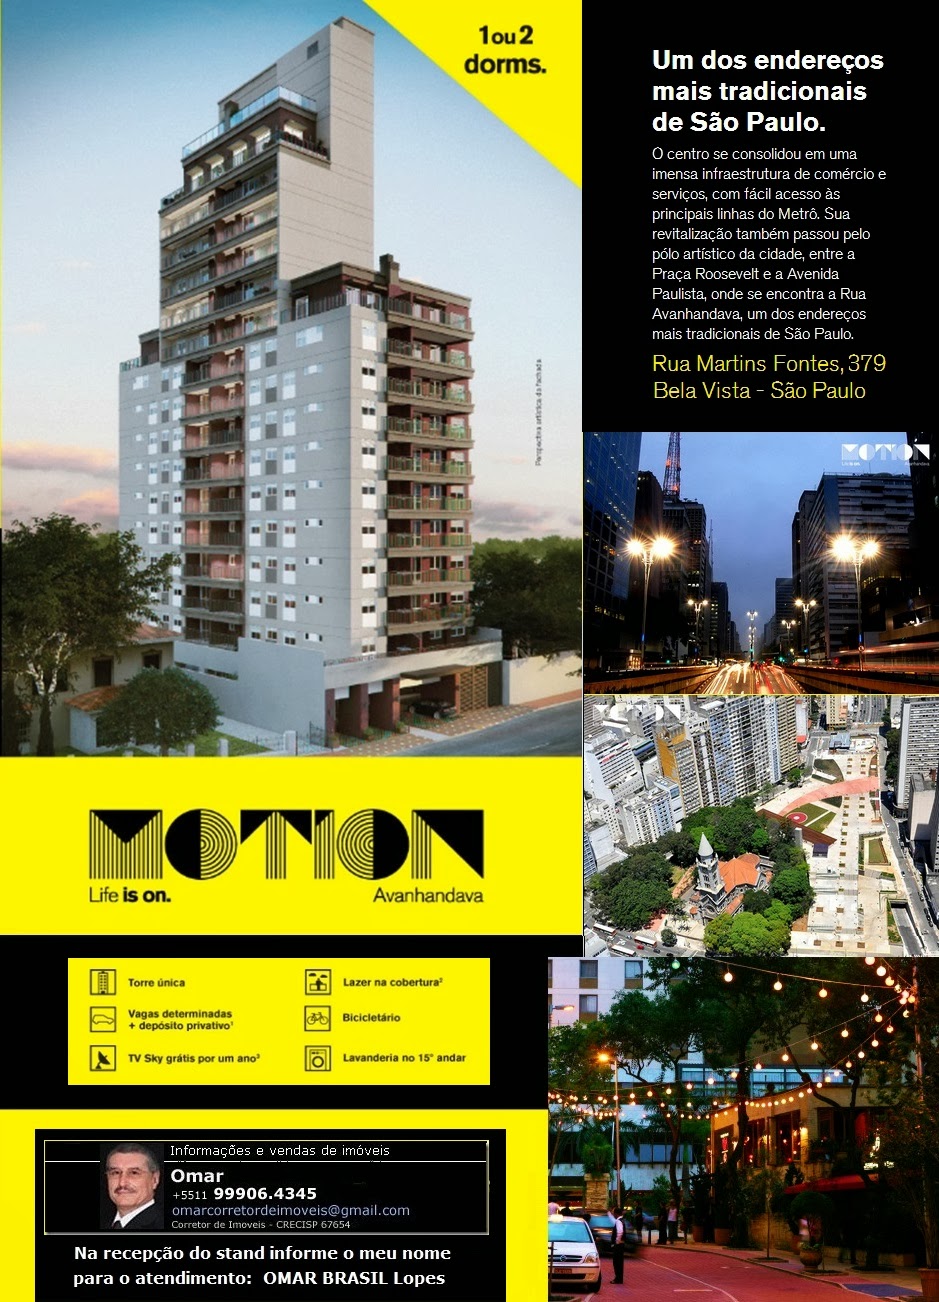 MOTION AVANHANDAVA - Apartamentos de 1 e 2 dorms., 41 a 76m² . R. Martins Fontes, República-SPaulo 